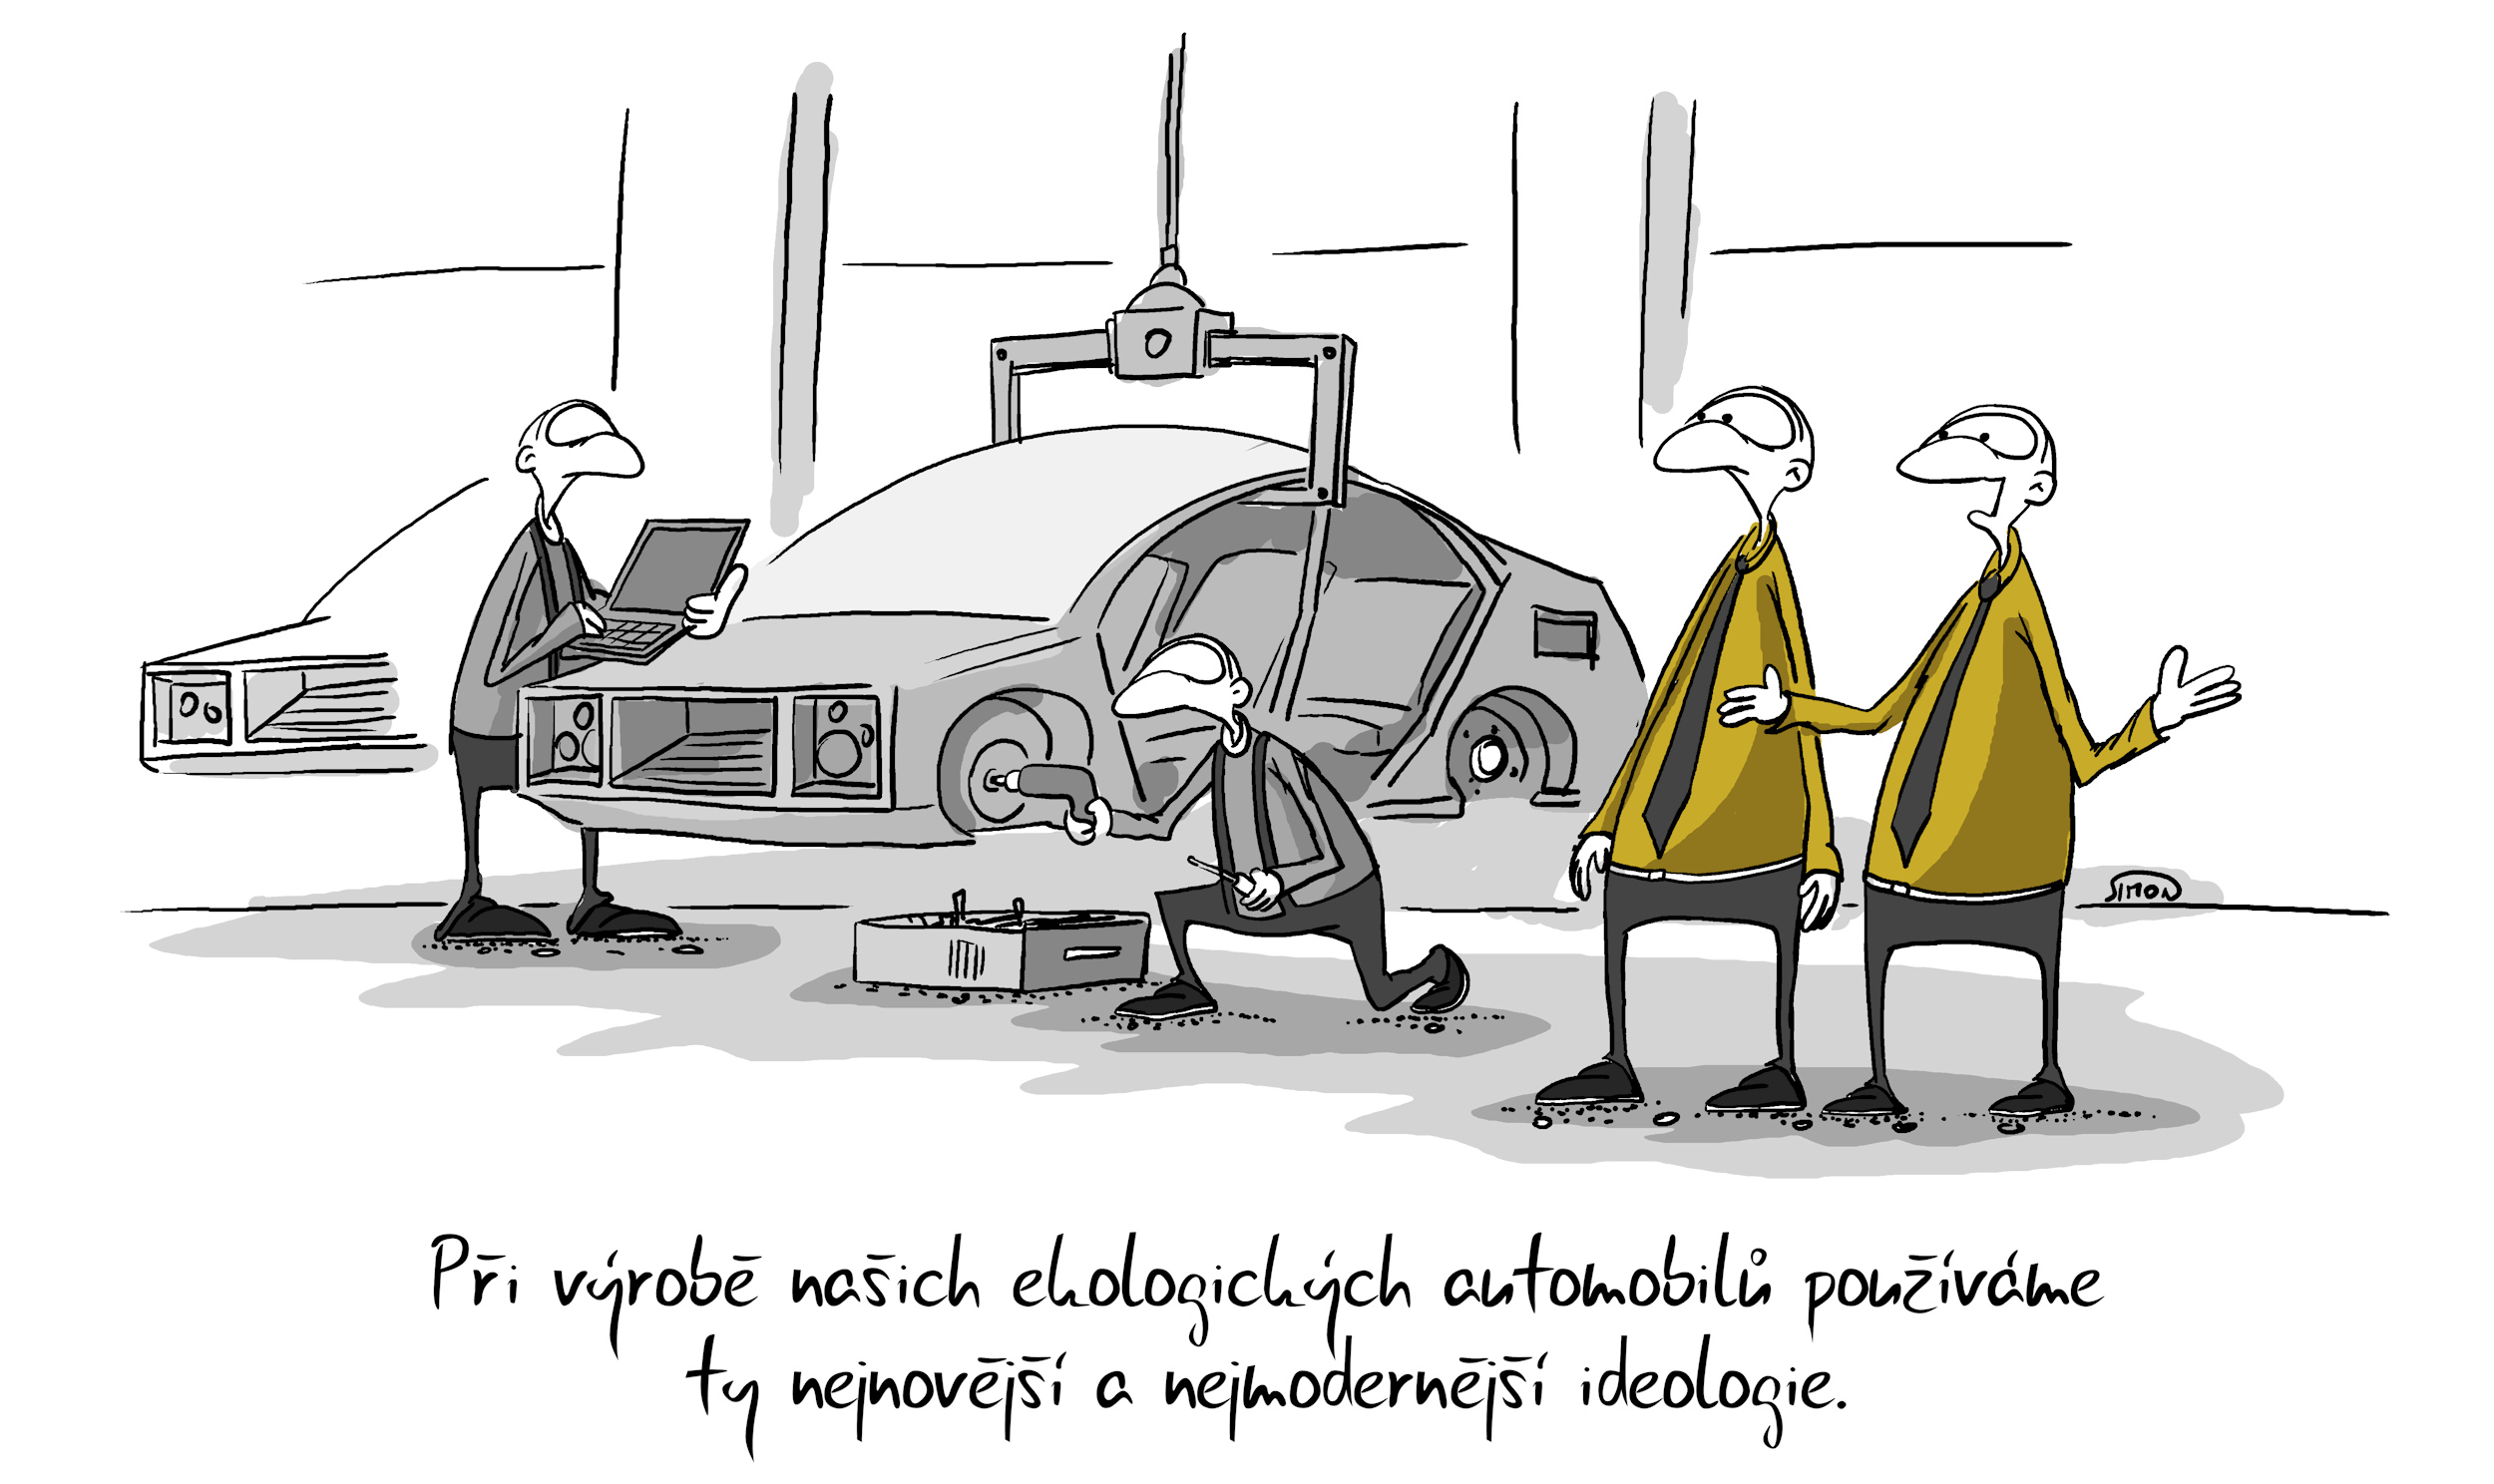 Kreslený vtip: Při výrobě našich automobilů používáme ty nejnovější a nejmodernější ideologie